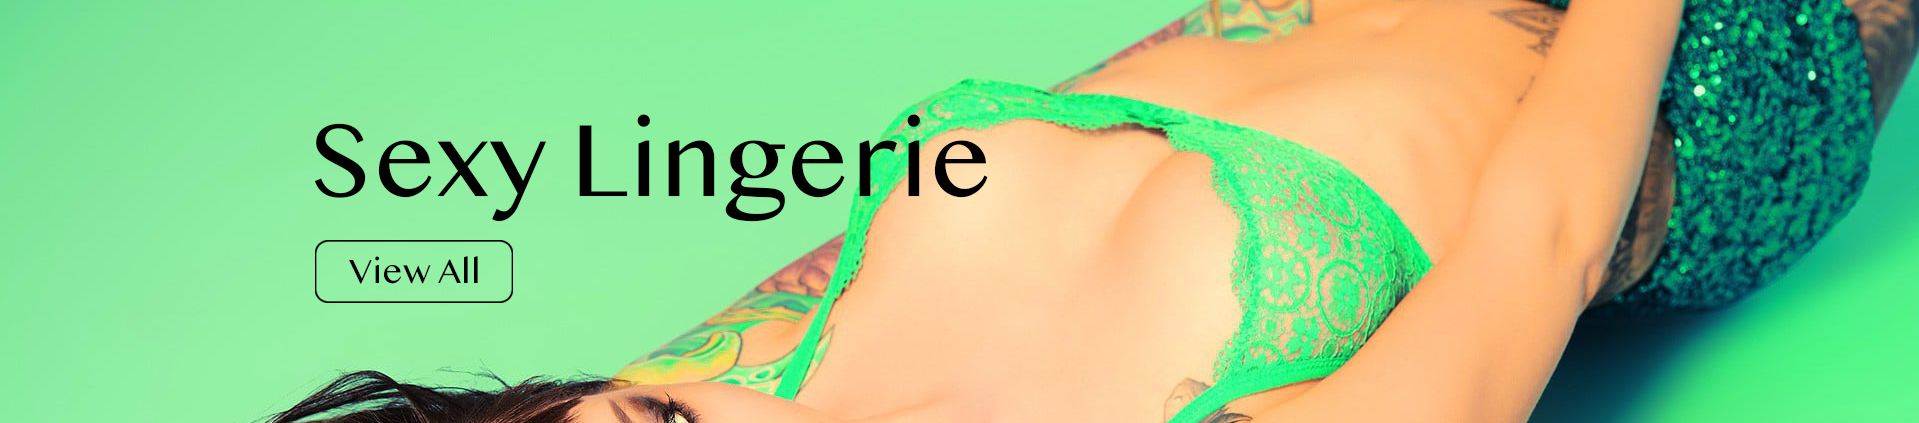 Australia Sexy Lingerie | Melbourne Lingerie - Sexy Lingerie